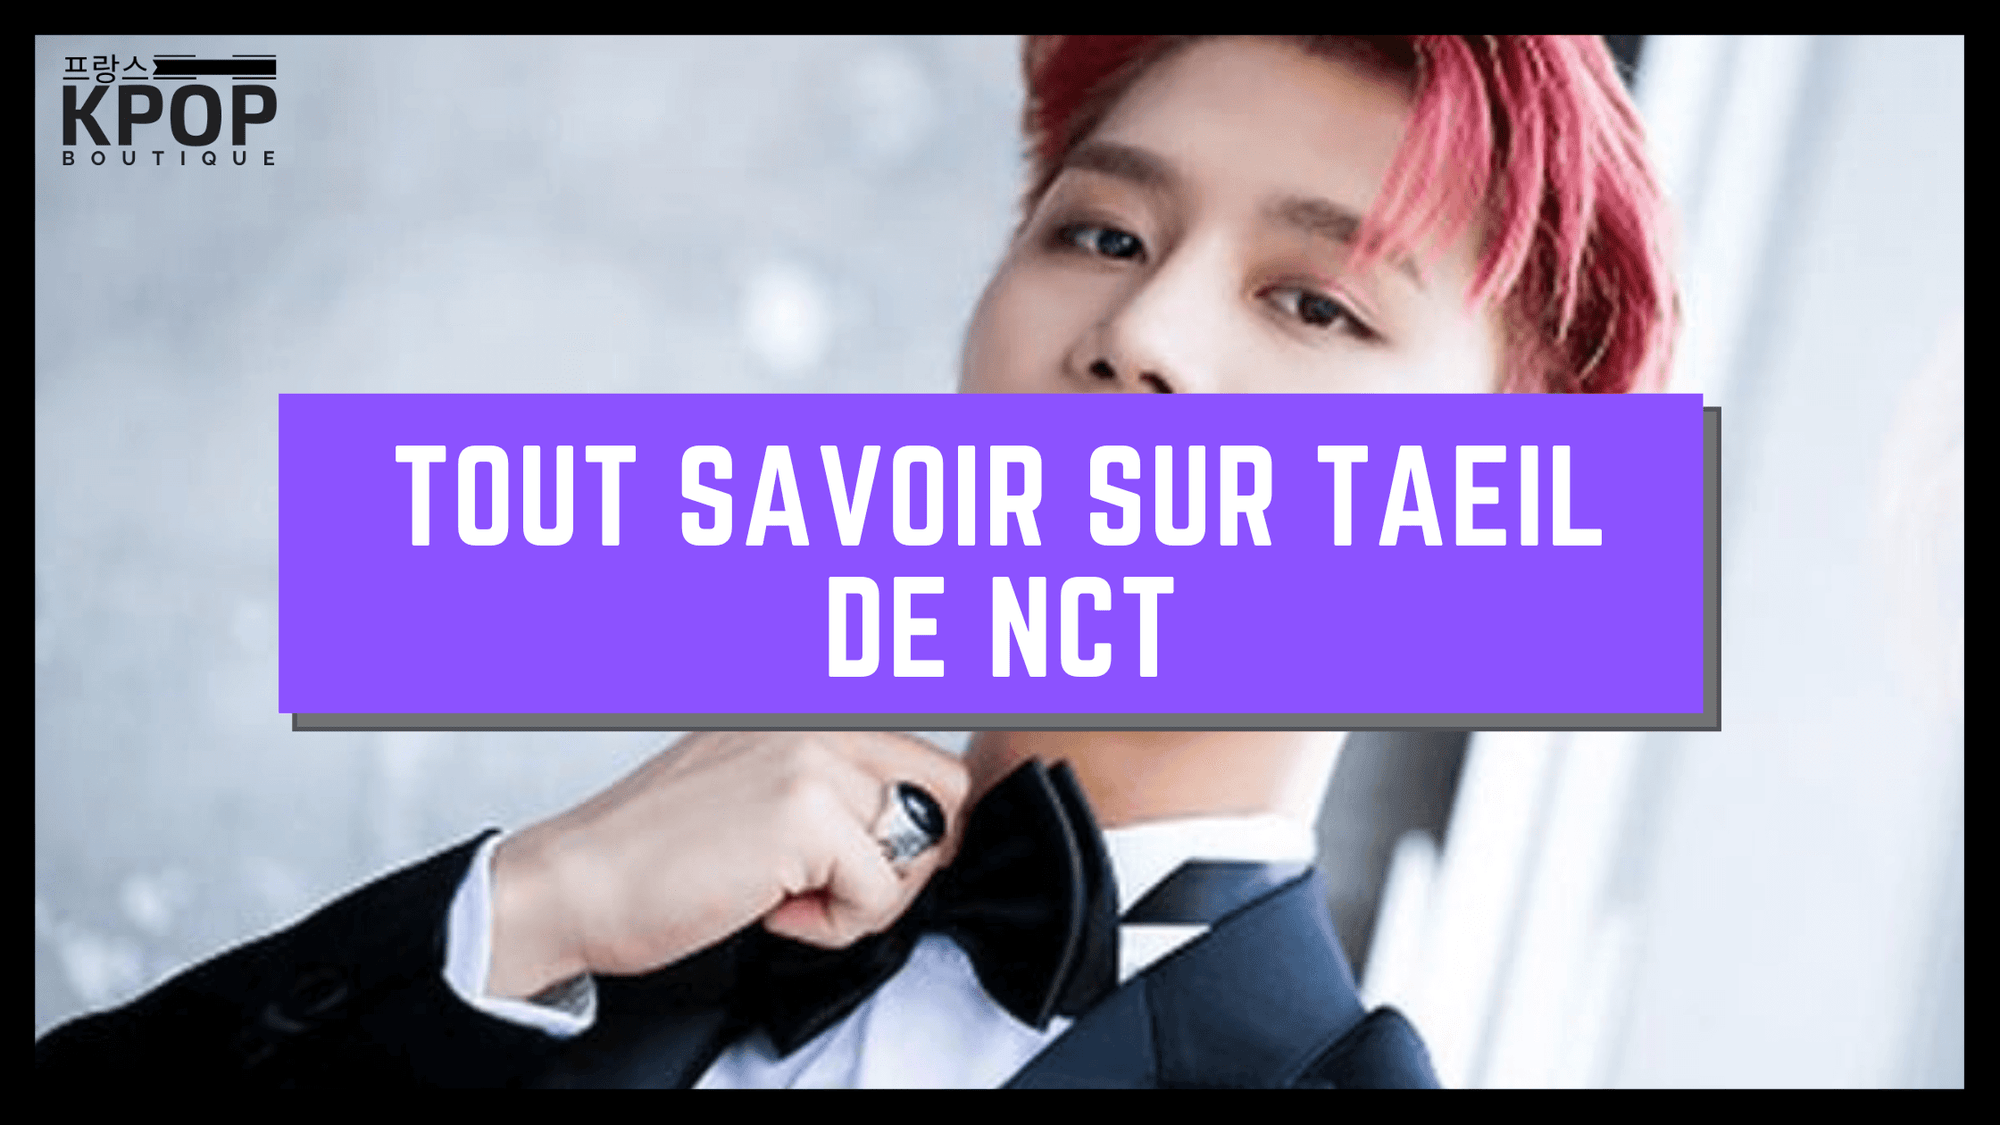 Taeil NCT K-POP